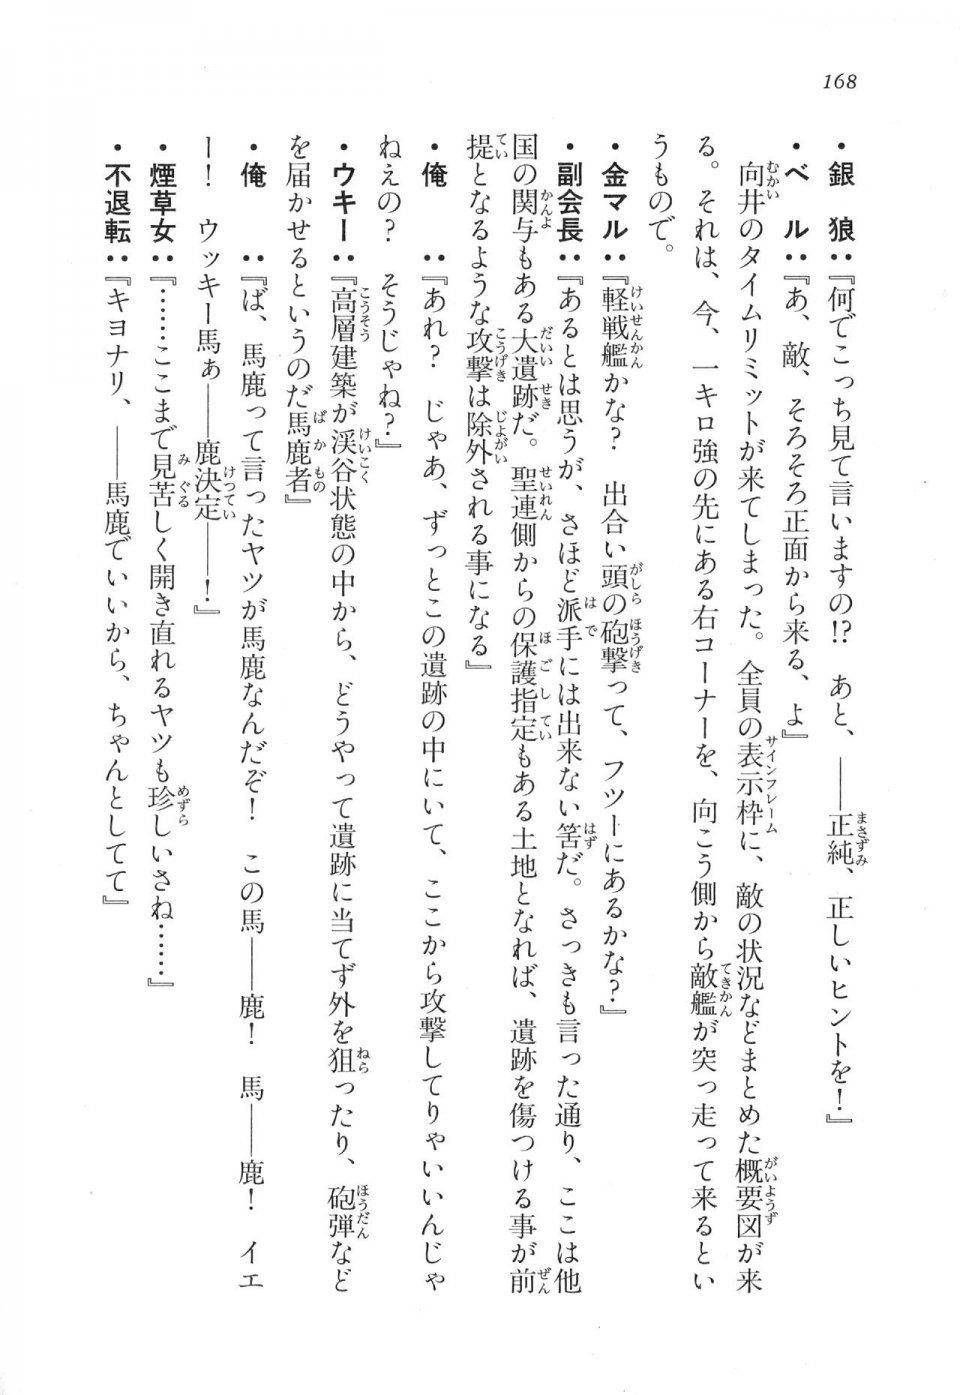 Kyoukai Senjou no Horizon LN Vol 17(7B) - Photo #168